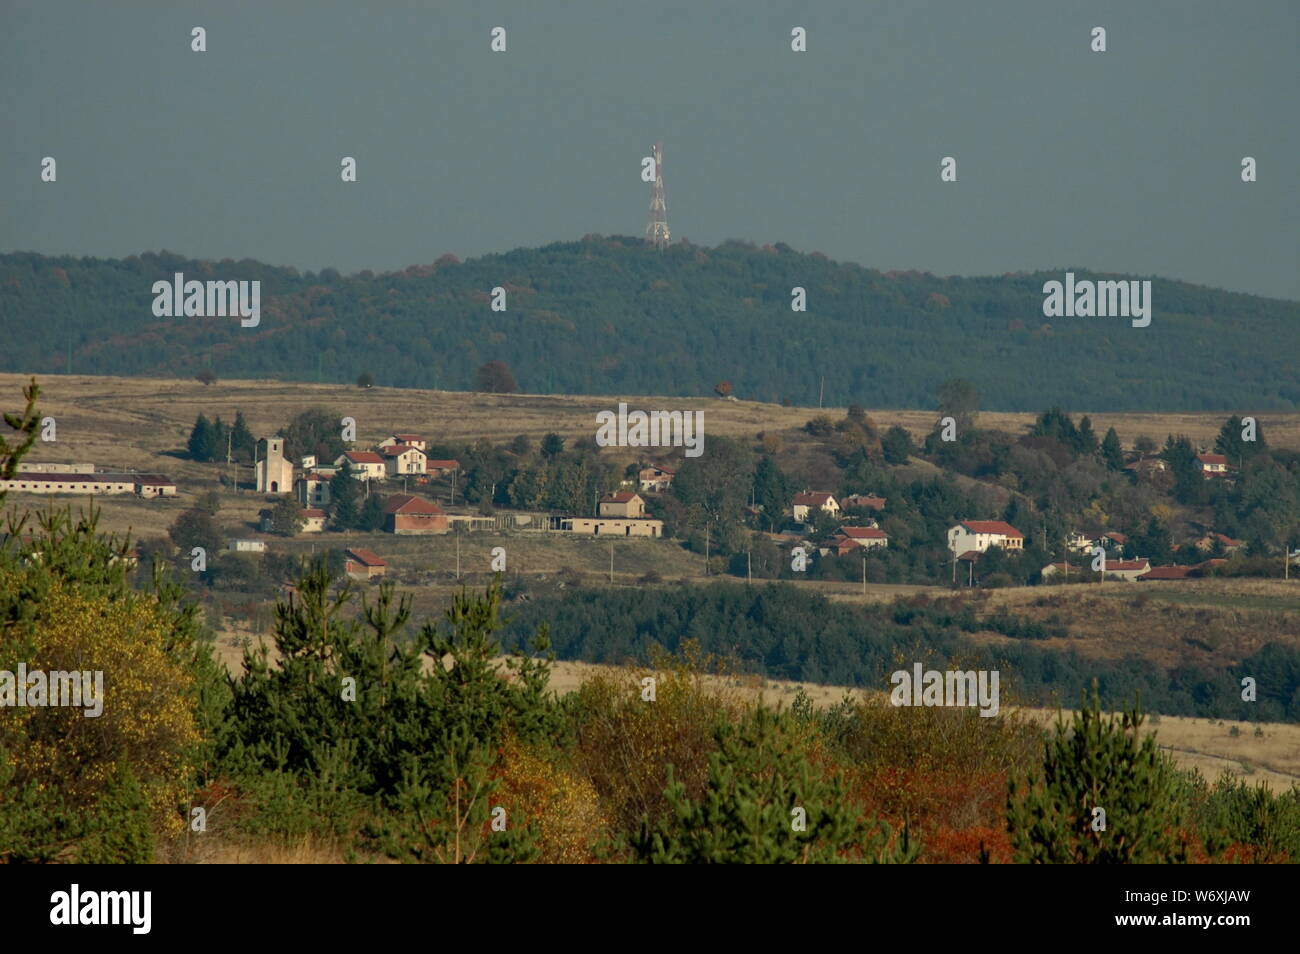 Villaggio Plana a Plana montagna in Bulgaria Foto Stock